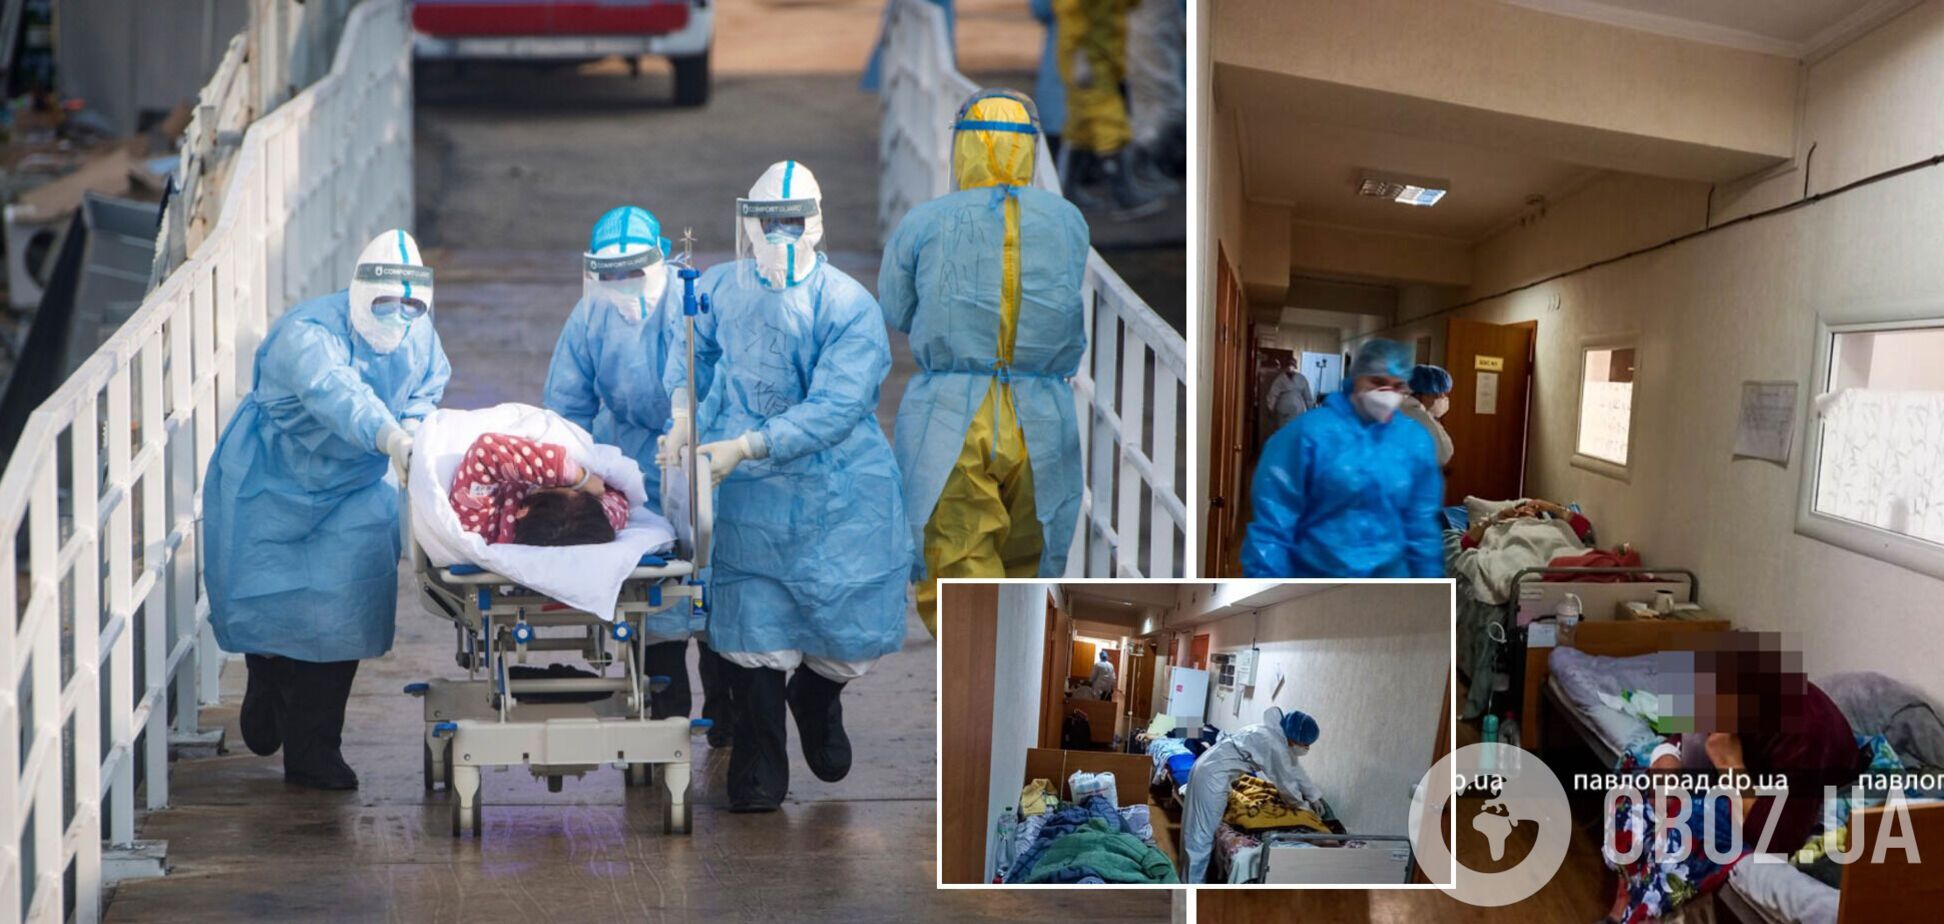 Из 200 пациентов лишь двое вакцинированы: в Павлограде больные с COVID-19 лежат в коридорах. Фото